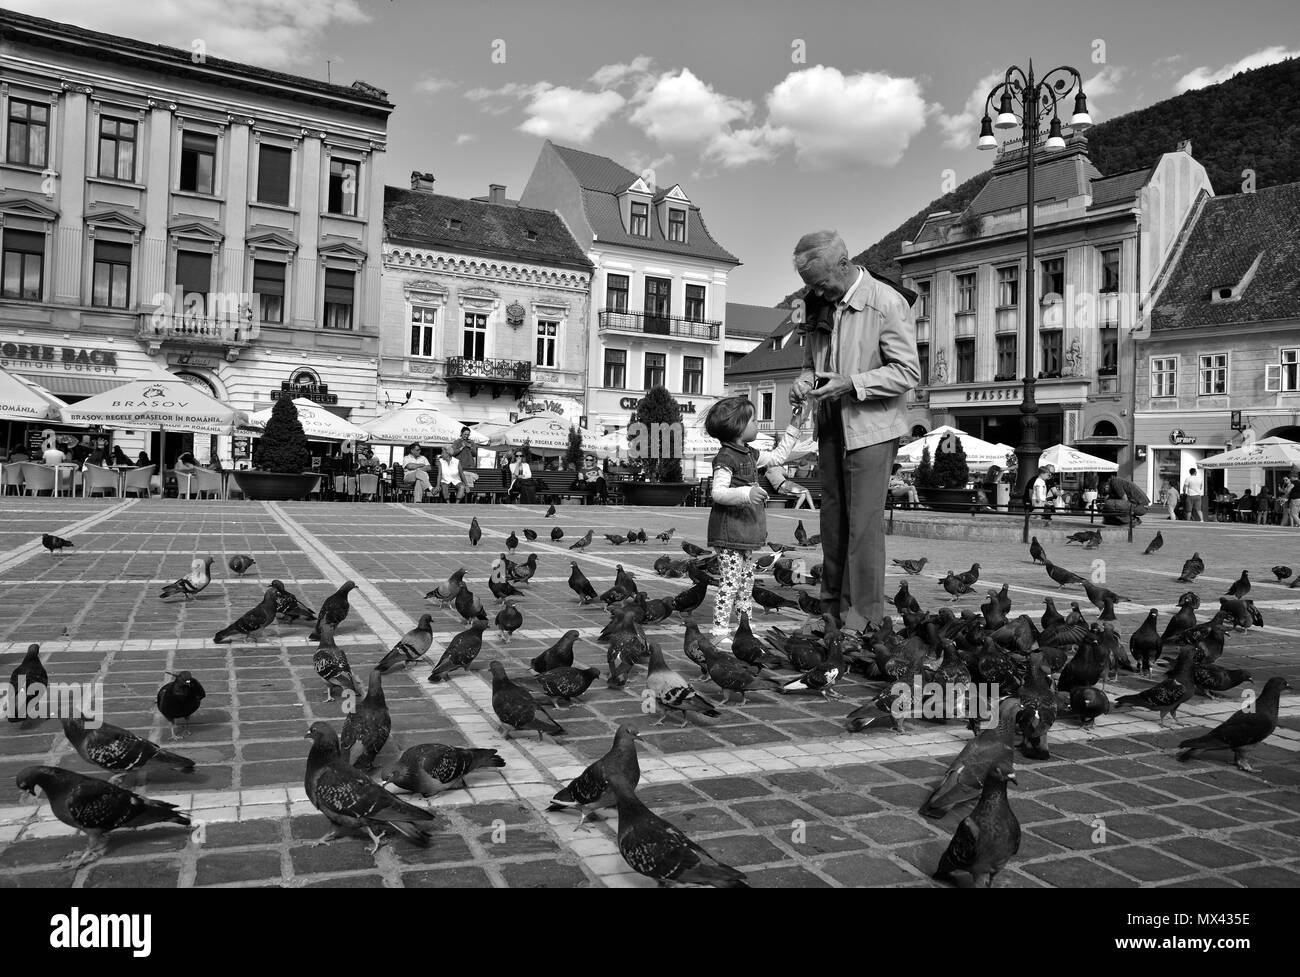 BRASOV, ROMANIA - MAY, 2018. Brasov Council Square ,amazing tourists attraction in Brasov city, Romania. Stock Photo